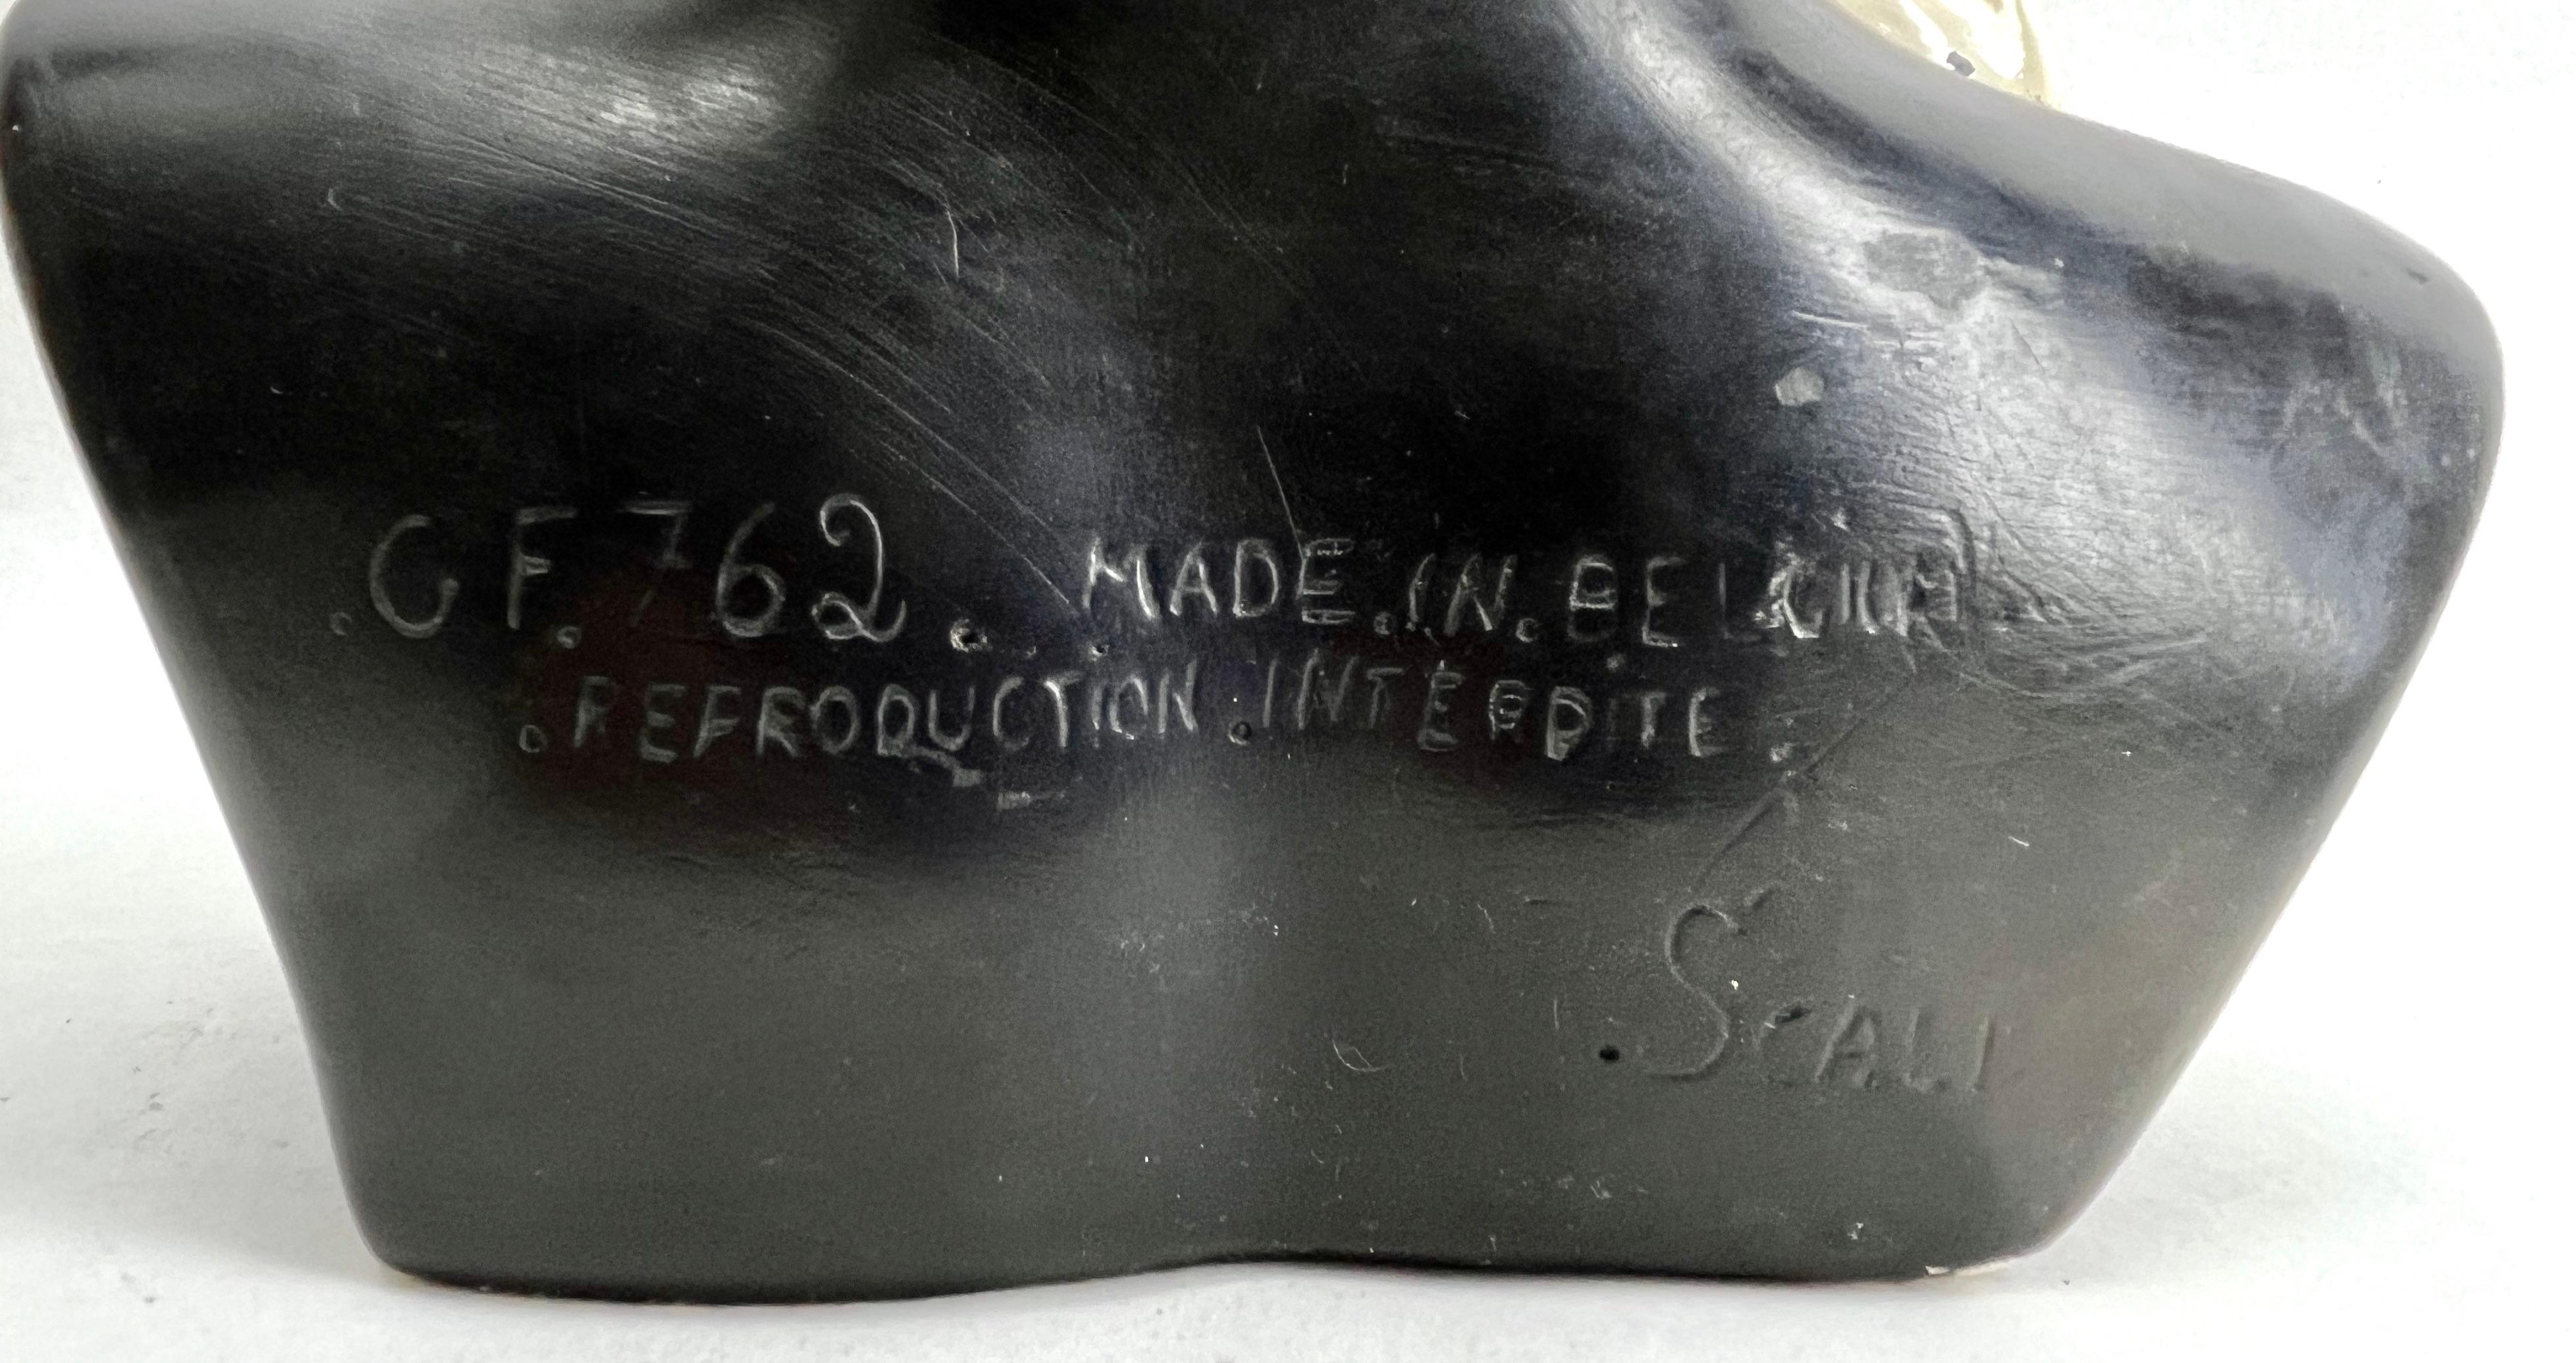 R. Scali G.F762 Firmado, Busto de cerámica policromada de un Nigerrin  Cerámico en venta